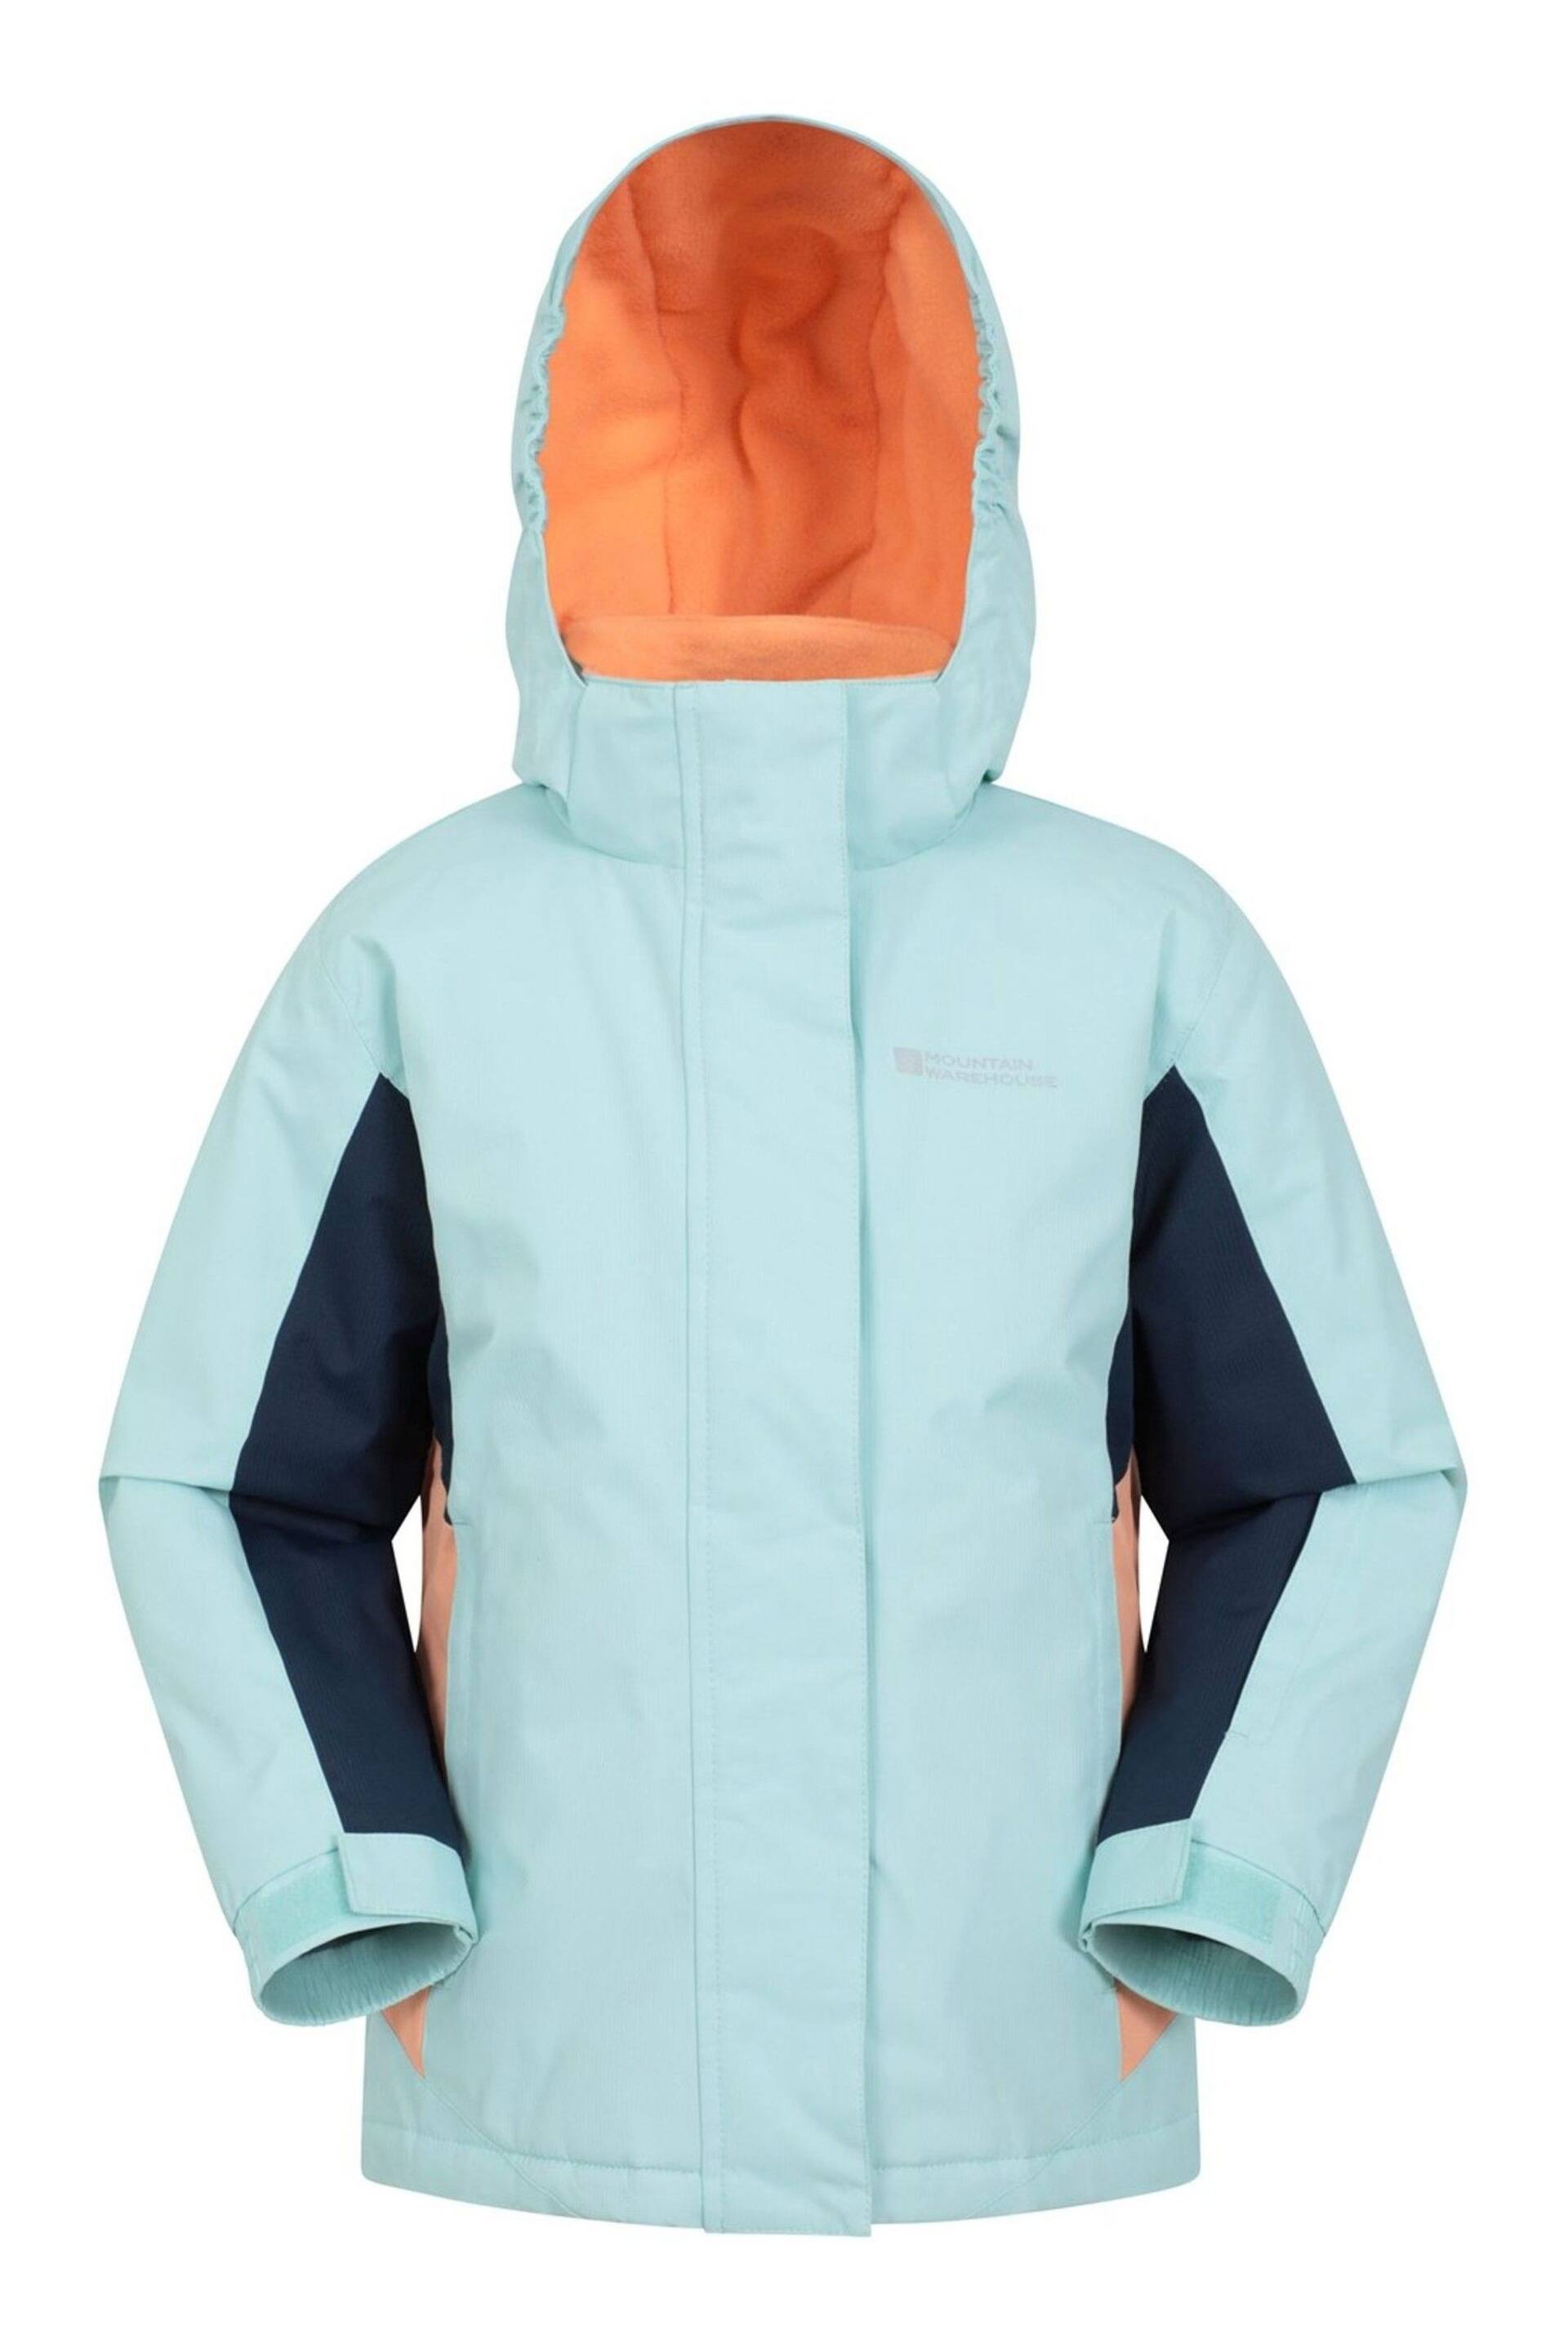 Mountain Warehouse Blue Honey Ski Jacket - Kids - Image 1 of 2